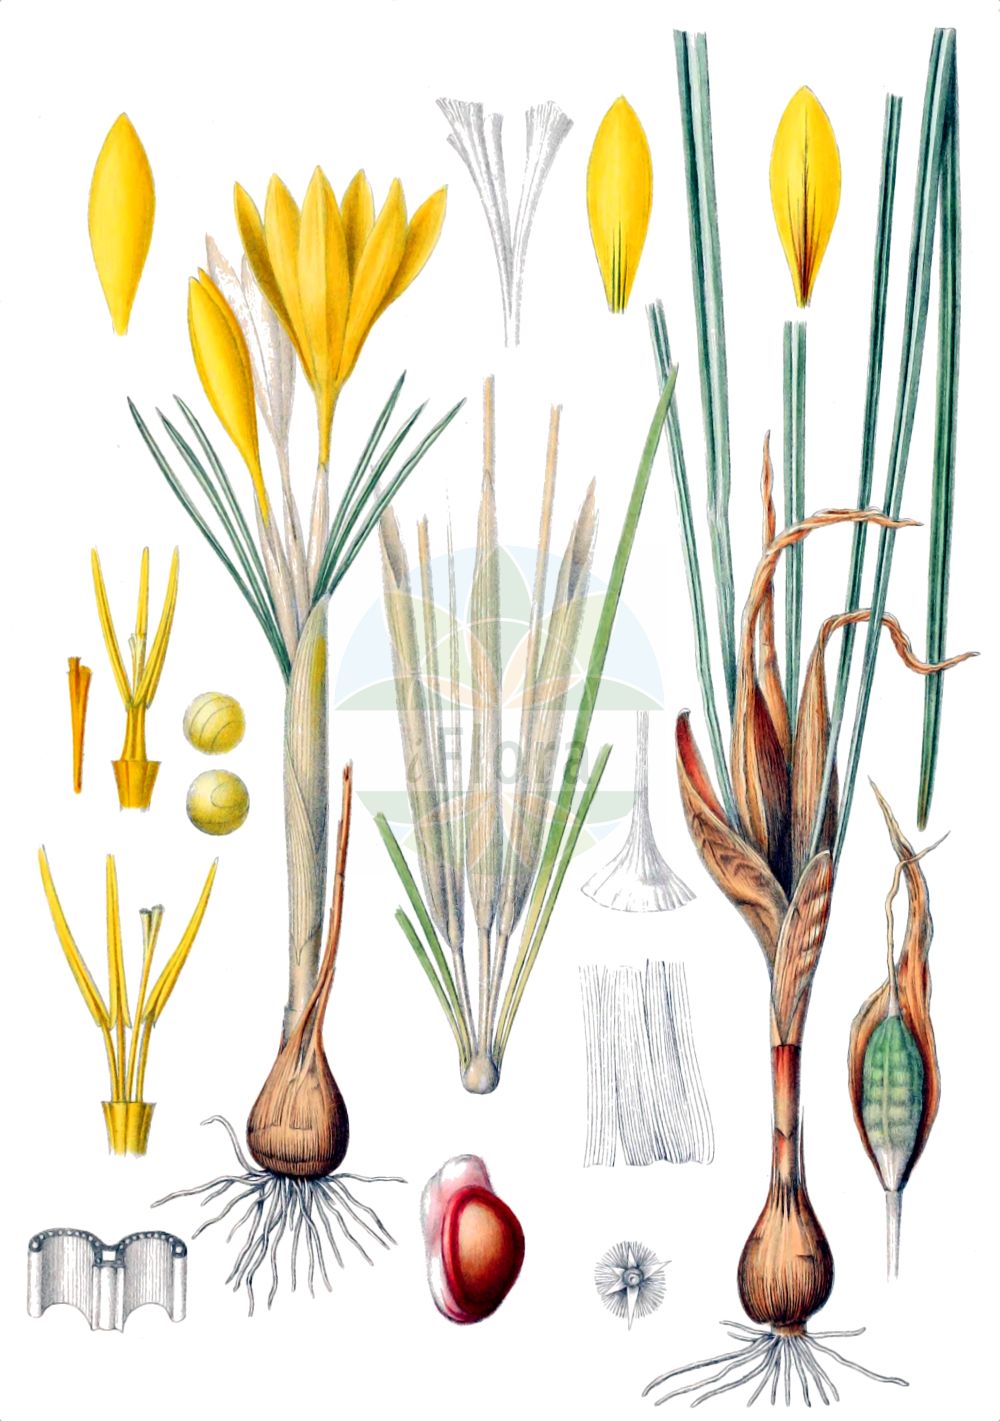 Historische Abbildung von Crocus flavus (Gold-Krokus - Dutch Yellow Crocus). Das Bild zeigt Blatt, Bluete, Frucht und Same. ---- Historical Drawing of Crocus flavus (Gold-Krokus - Dutch Yellow Crocus). The image is showing leaf, flower, fruit and seed.(Crocus flavus,Gold-Krokus,Dutch Yellow Crocus,Crocus flavus,Gold-Krokus,Dutch Yellow Crocus,Yellow Crocus,Crocus,Krokus,Crocus,Iridaceae,Schwertliliengewächse,Iris family,Blatt,Bluete,Frucht,Same,leaf,flower,fruit,seed,Maw (1886))